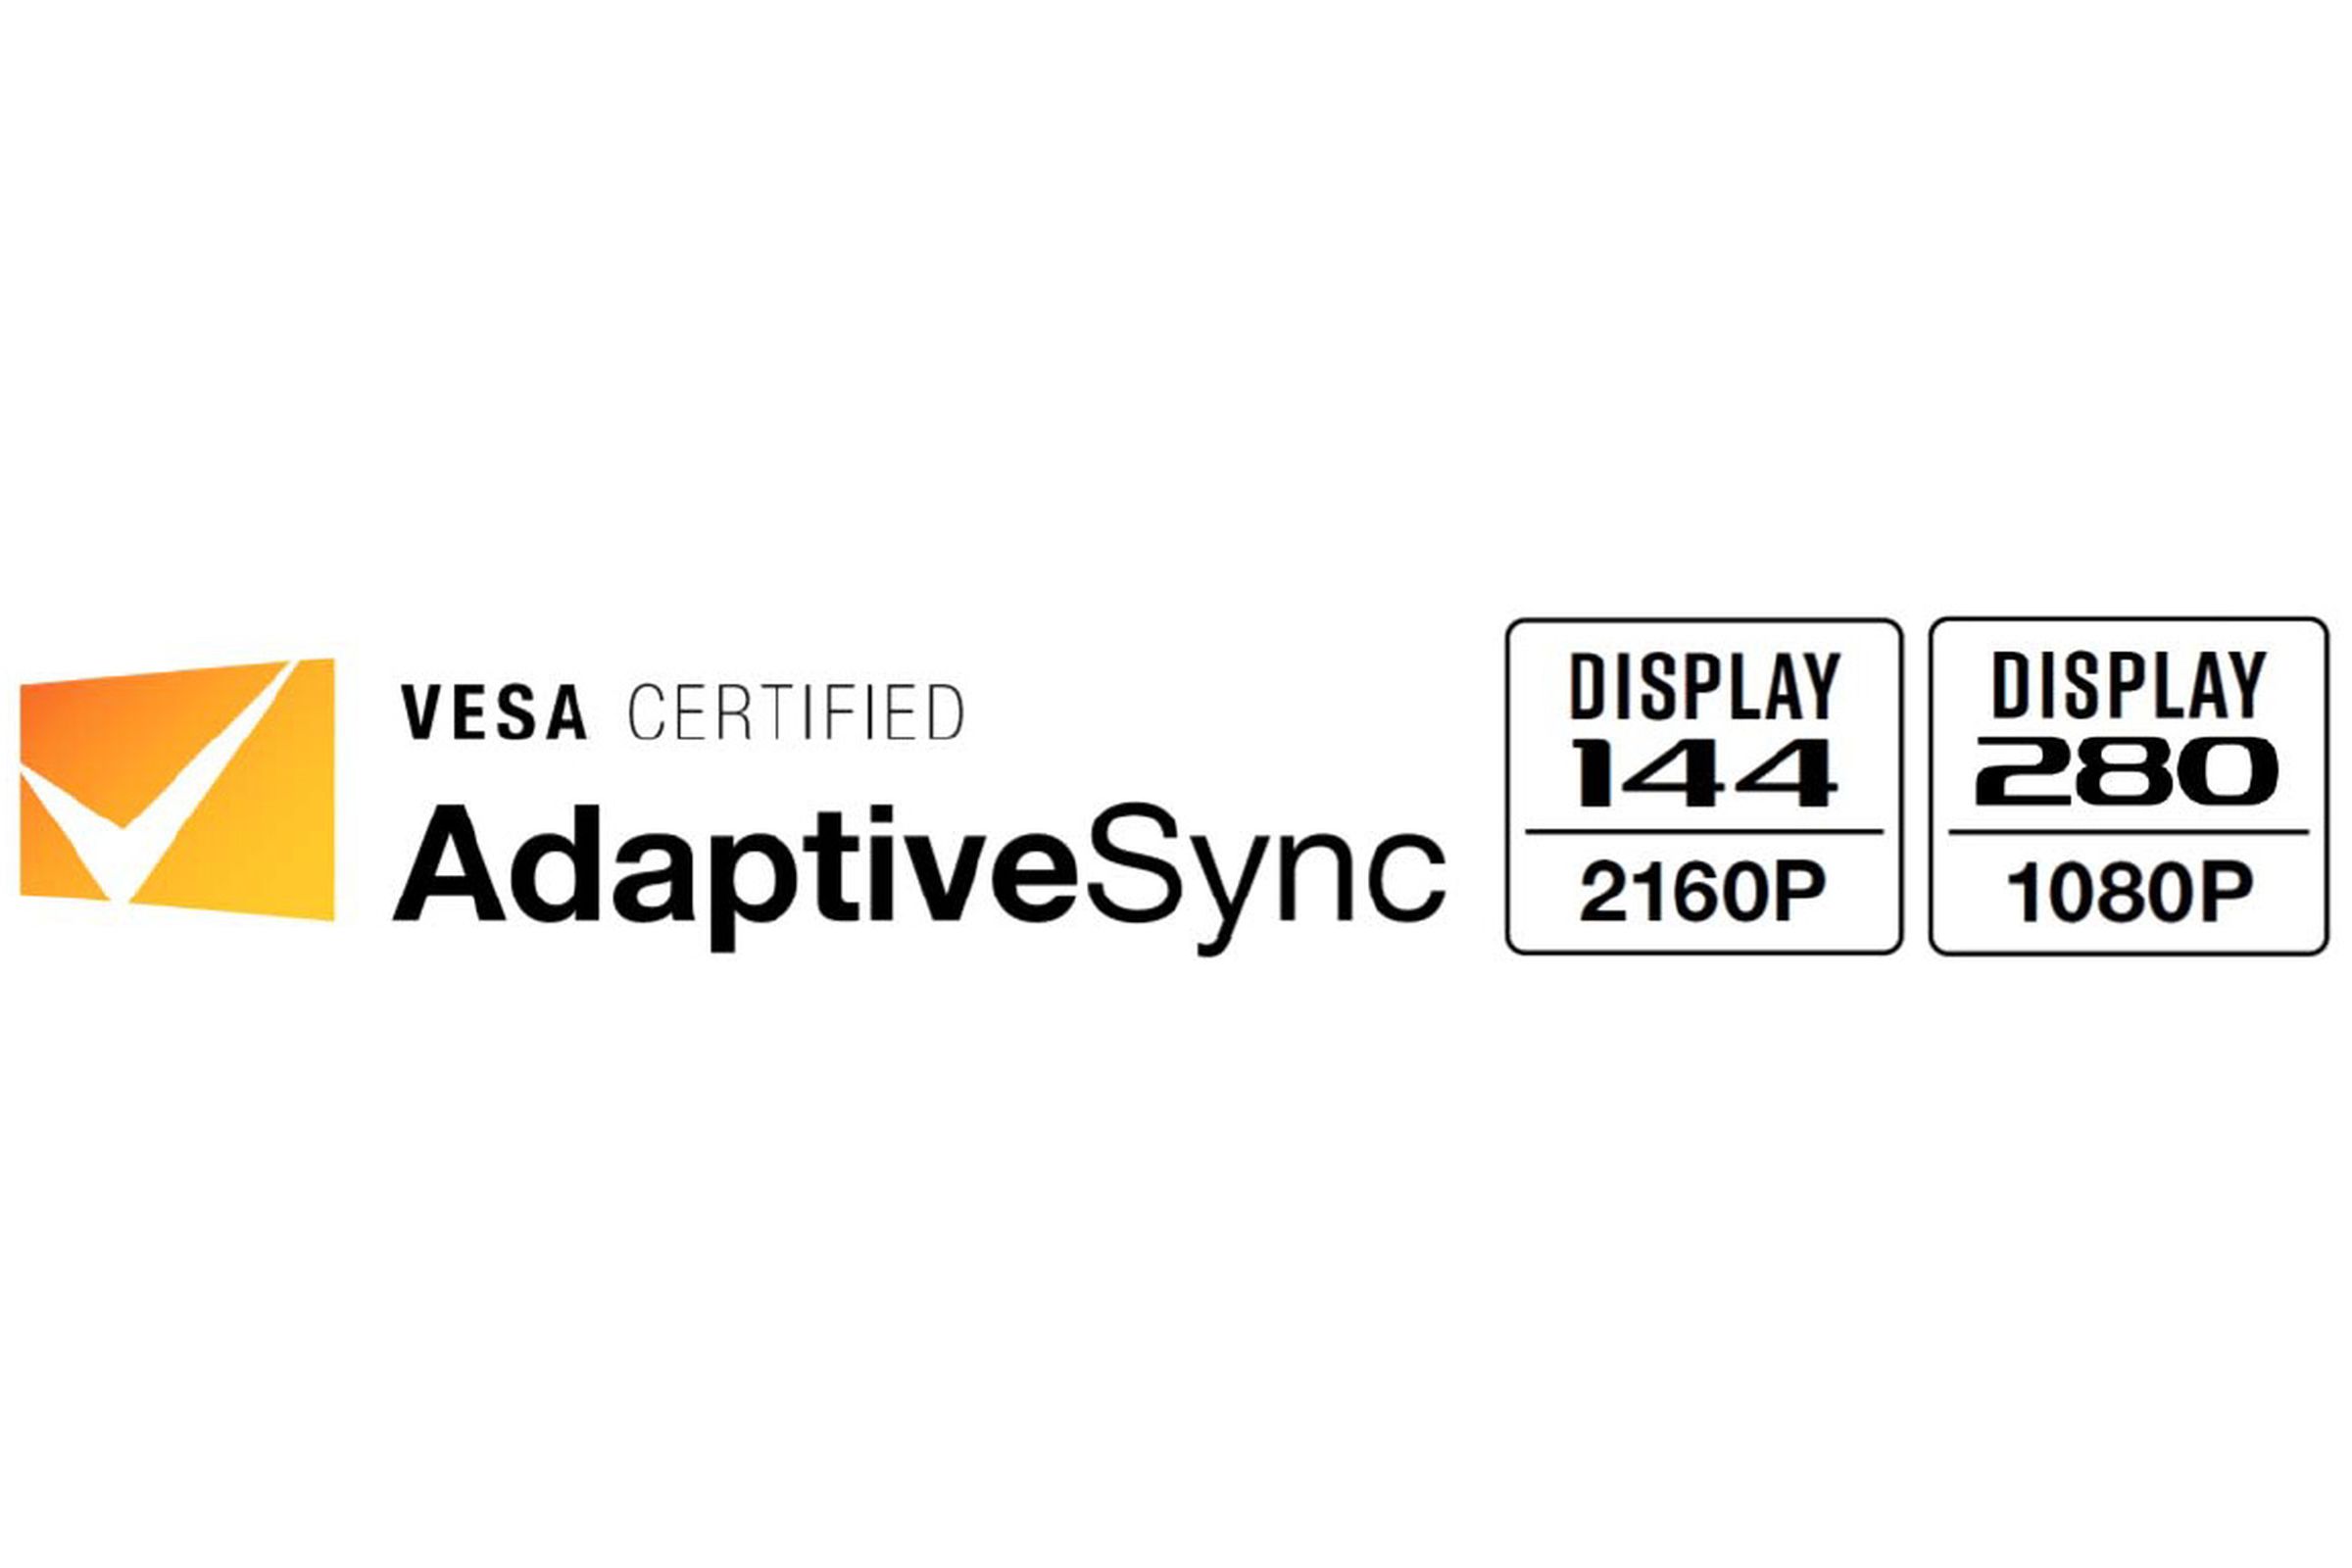 VESA Certified AdaptiveSync logo.